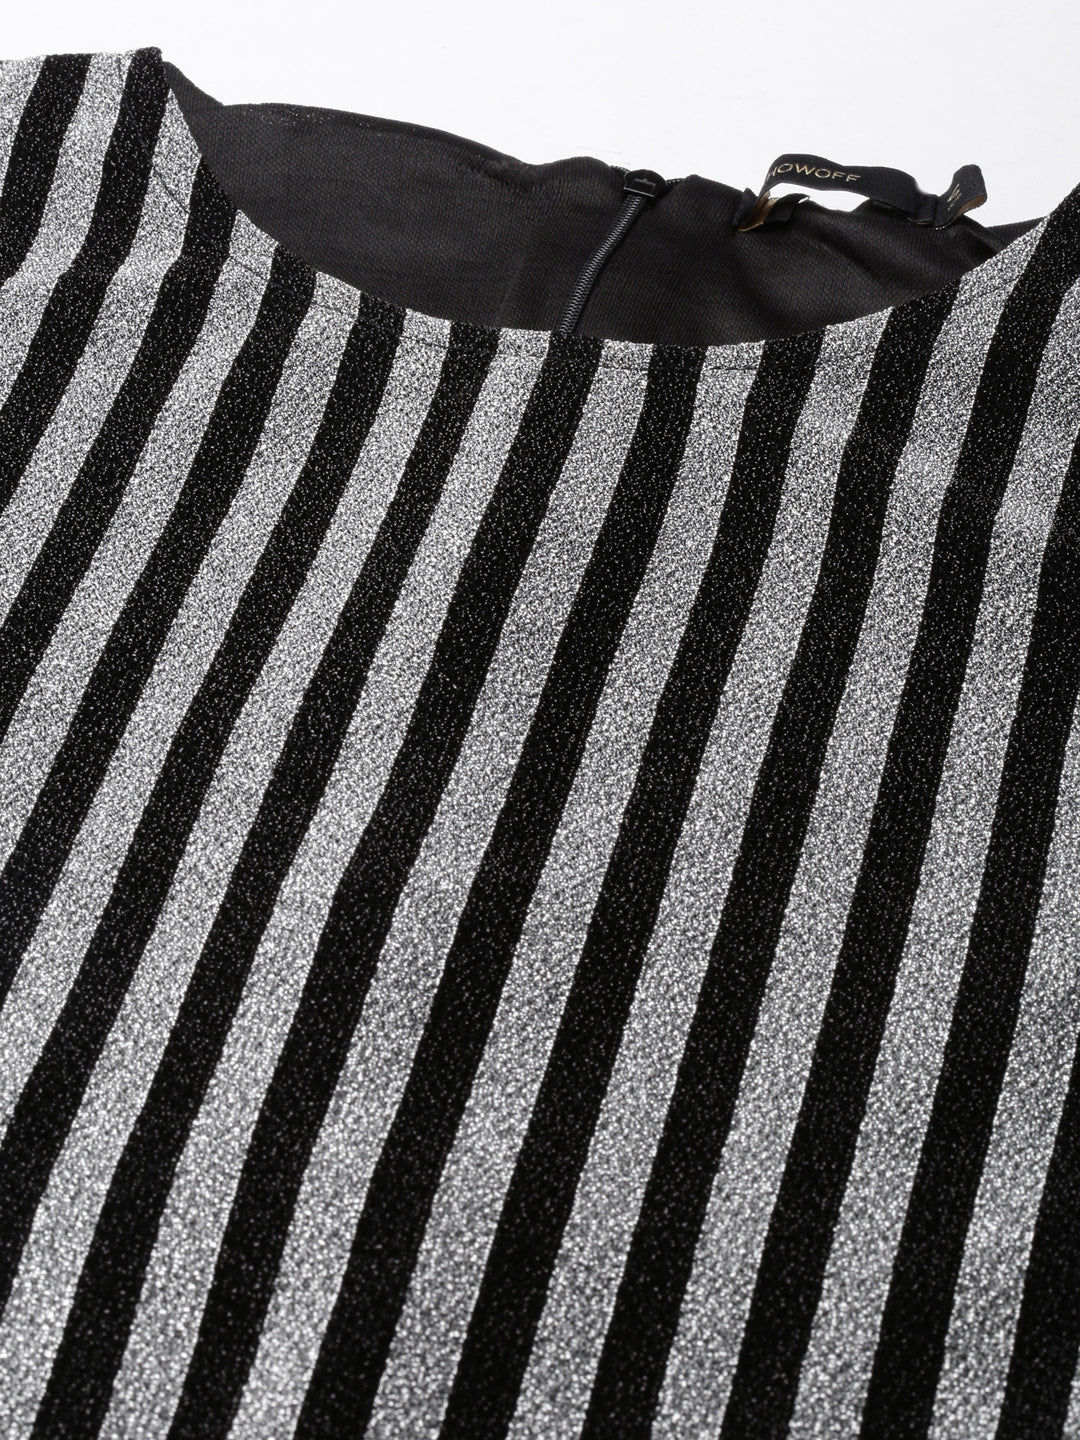 Women Silver Striped Bodycon Dress